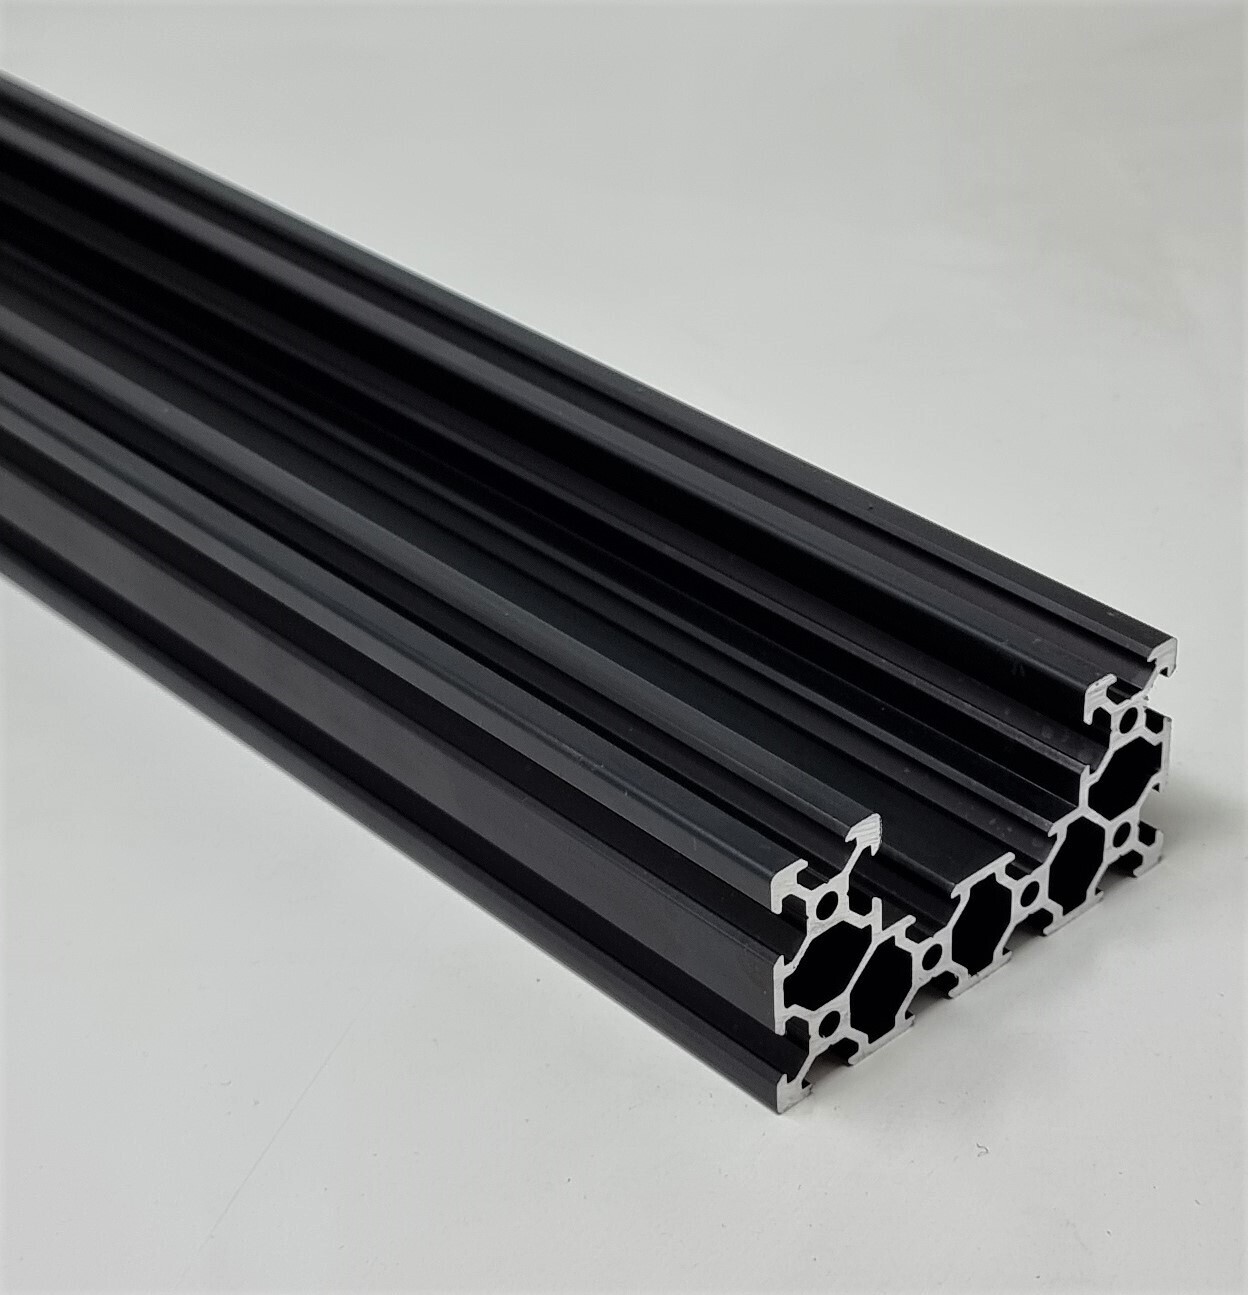 C Beam Linear Rail Aluminium Extrusion Profile (BLACK)